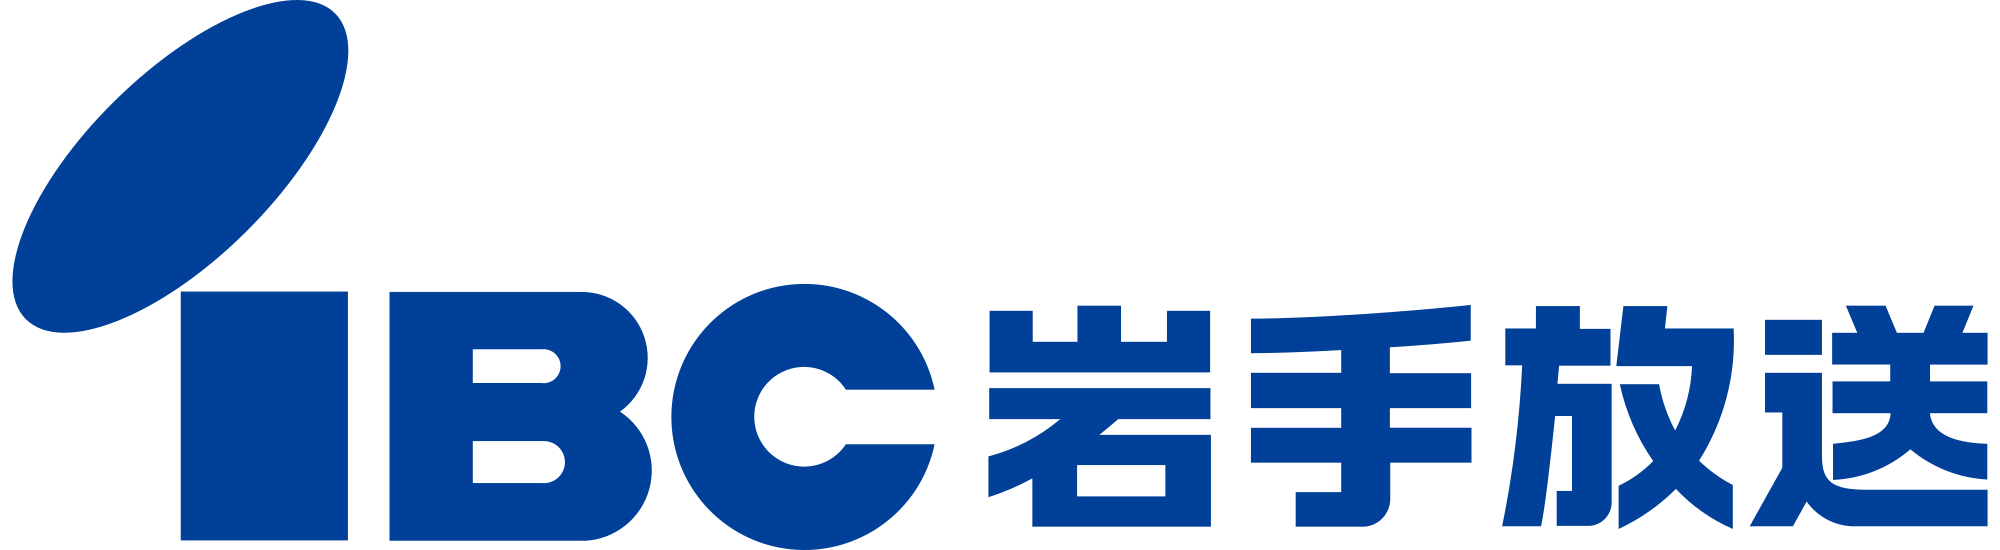 IBC Iwate Broadcasting